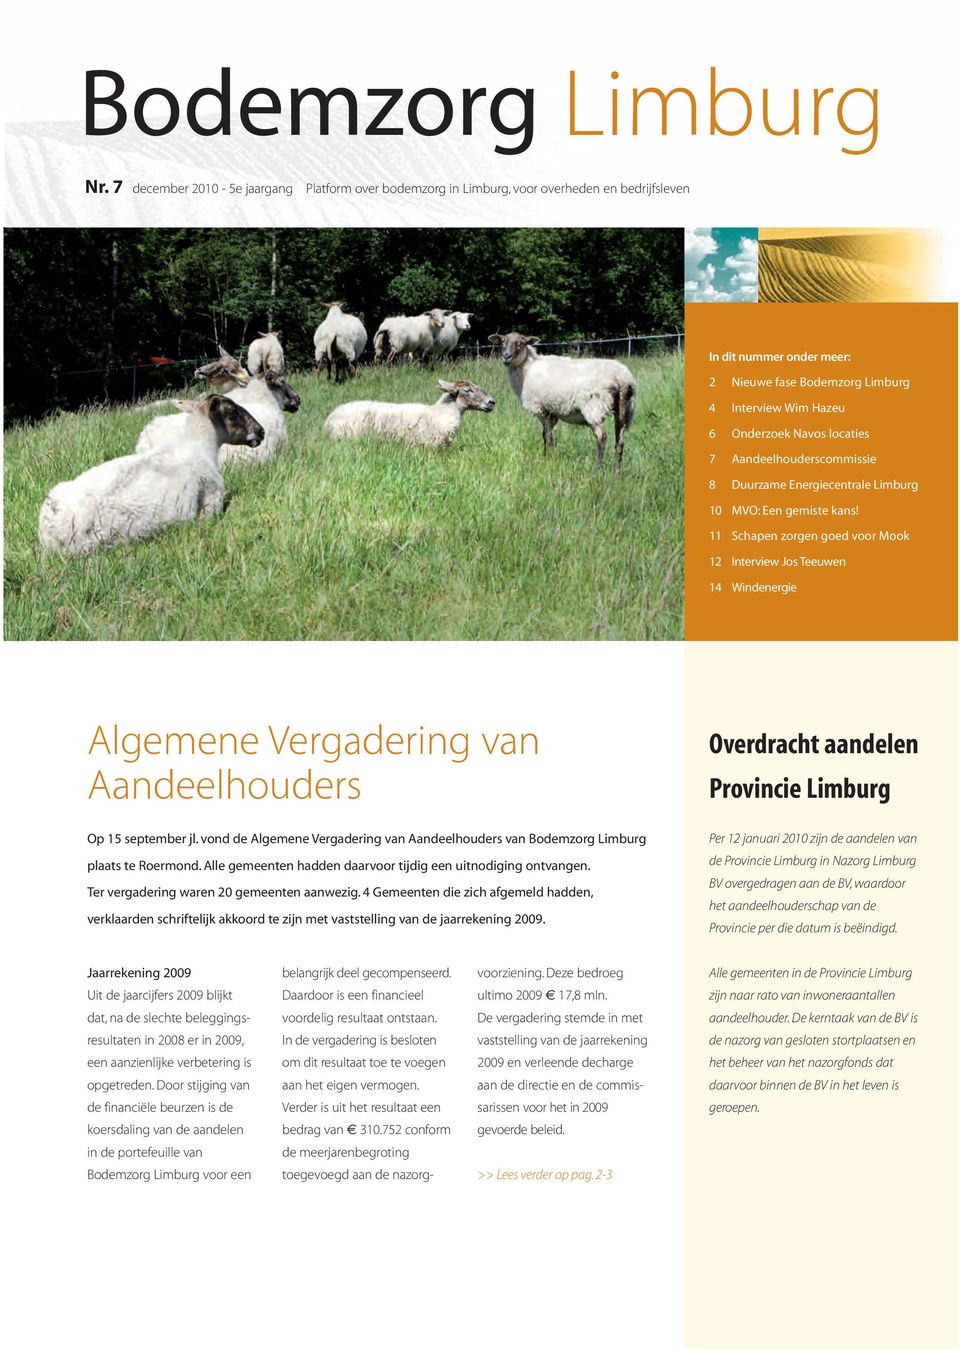 locaties 7 Aandeelhouderscommissie 8 Duurzame Energiecentrale Limburg 10 MVO: Een gemiste kans!